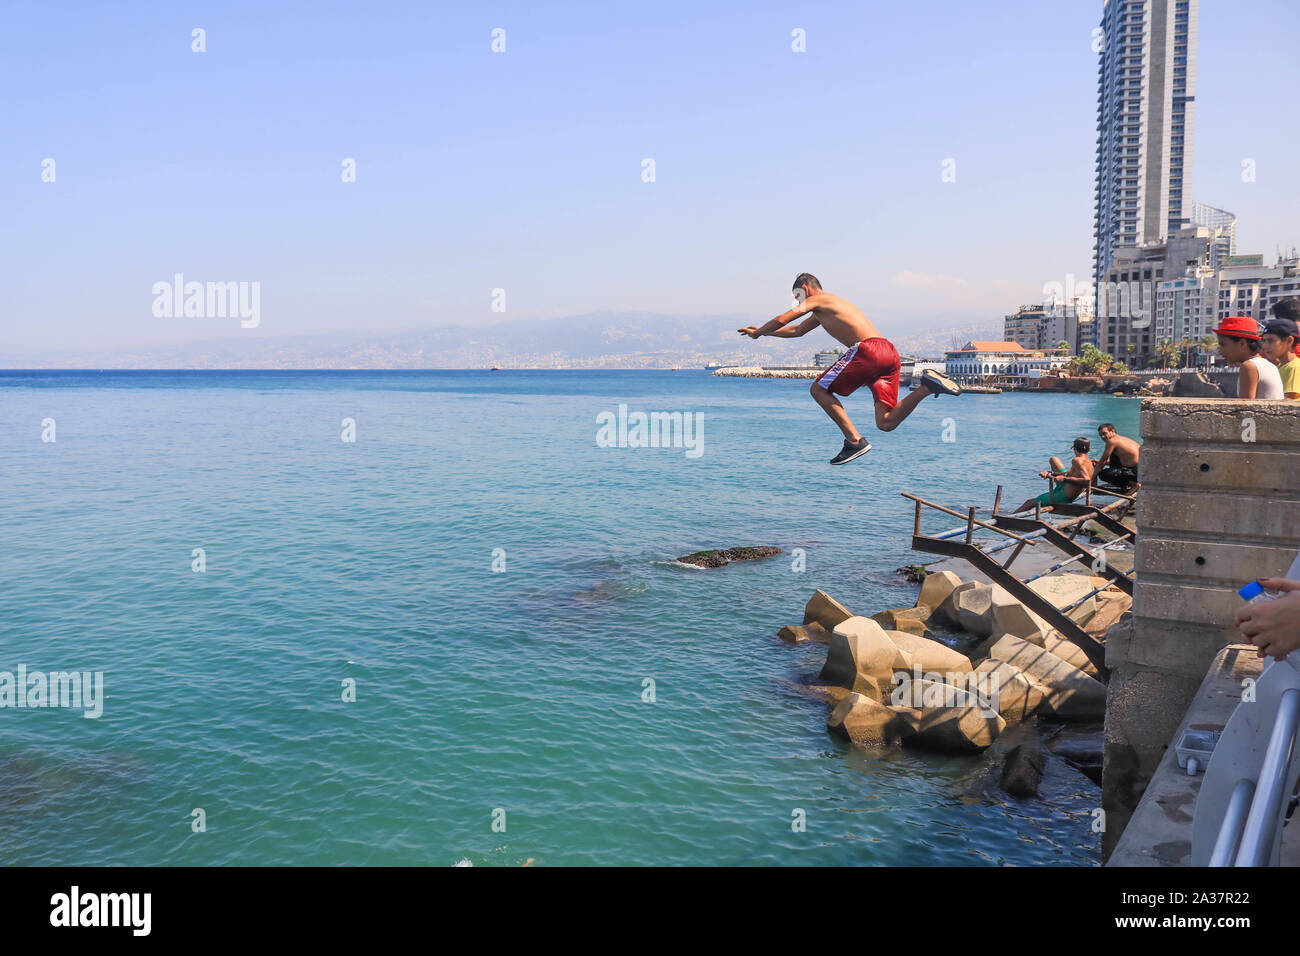 Oktober 6, 2019, Beirut, Libanon: Ein Mann taucht in das Meer während der heißen und feuchten Tag in Beirut. (Bild: © Amer Ghazzal/SOPA Bilder über ZUMA Draht) Stockfoto